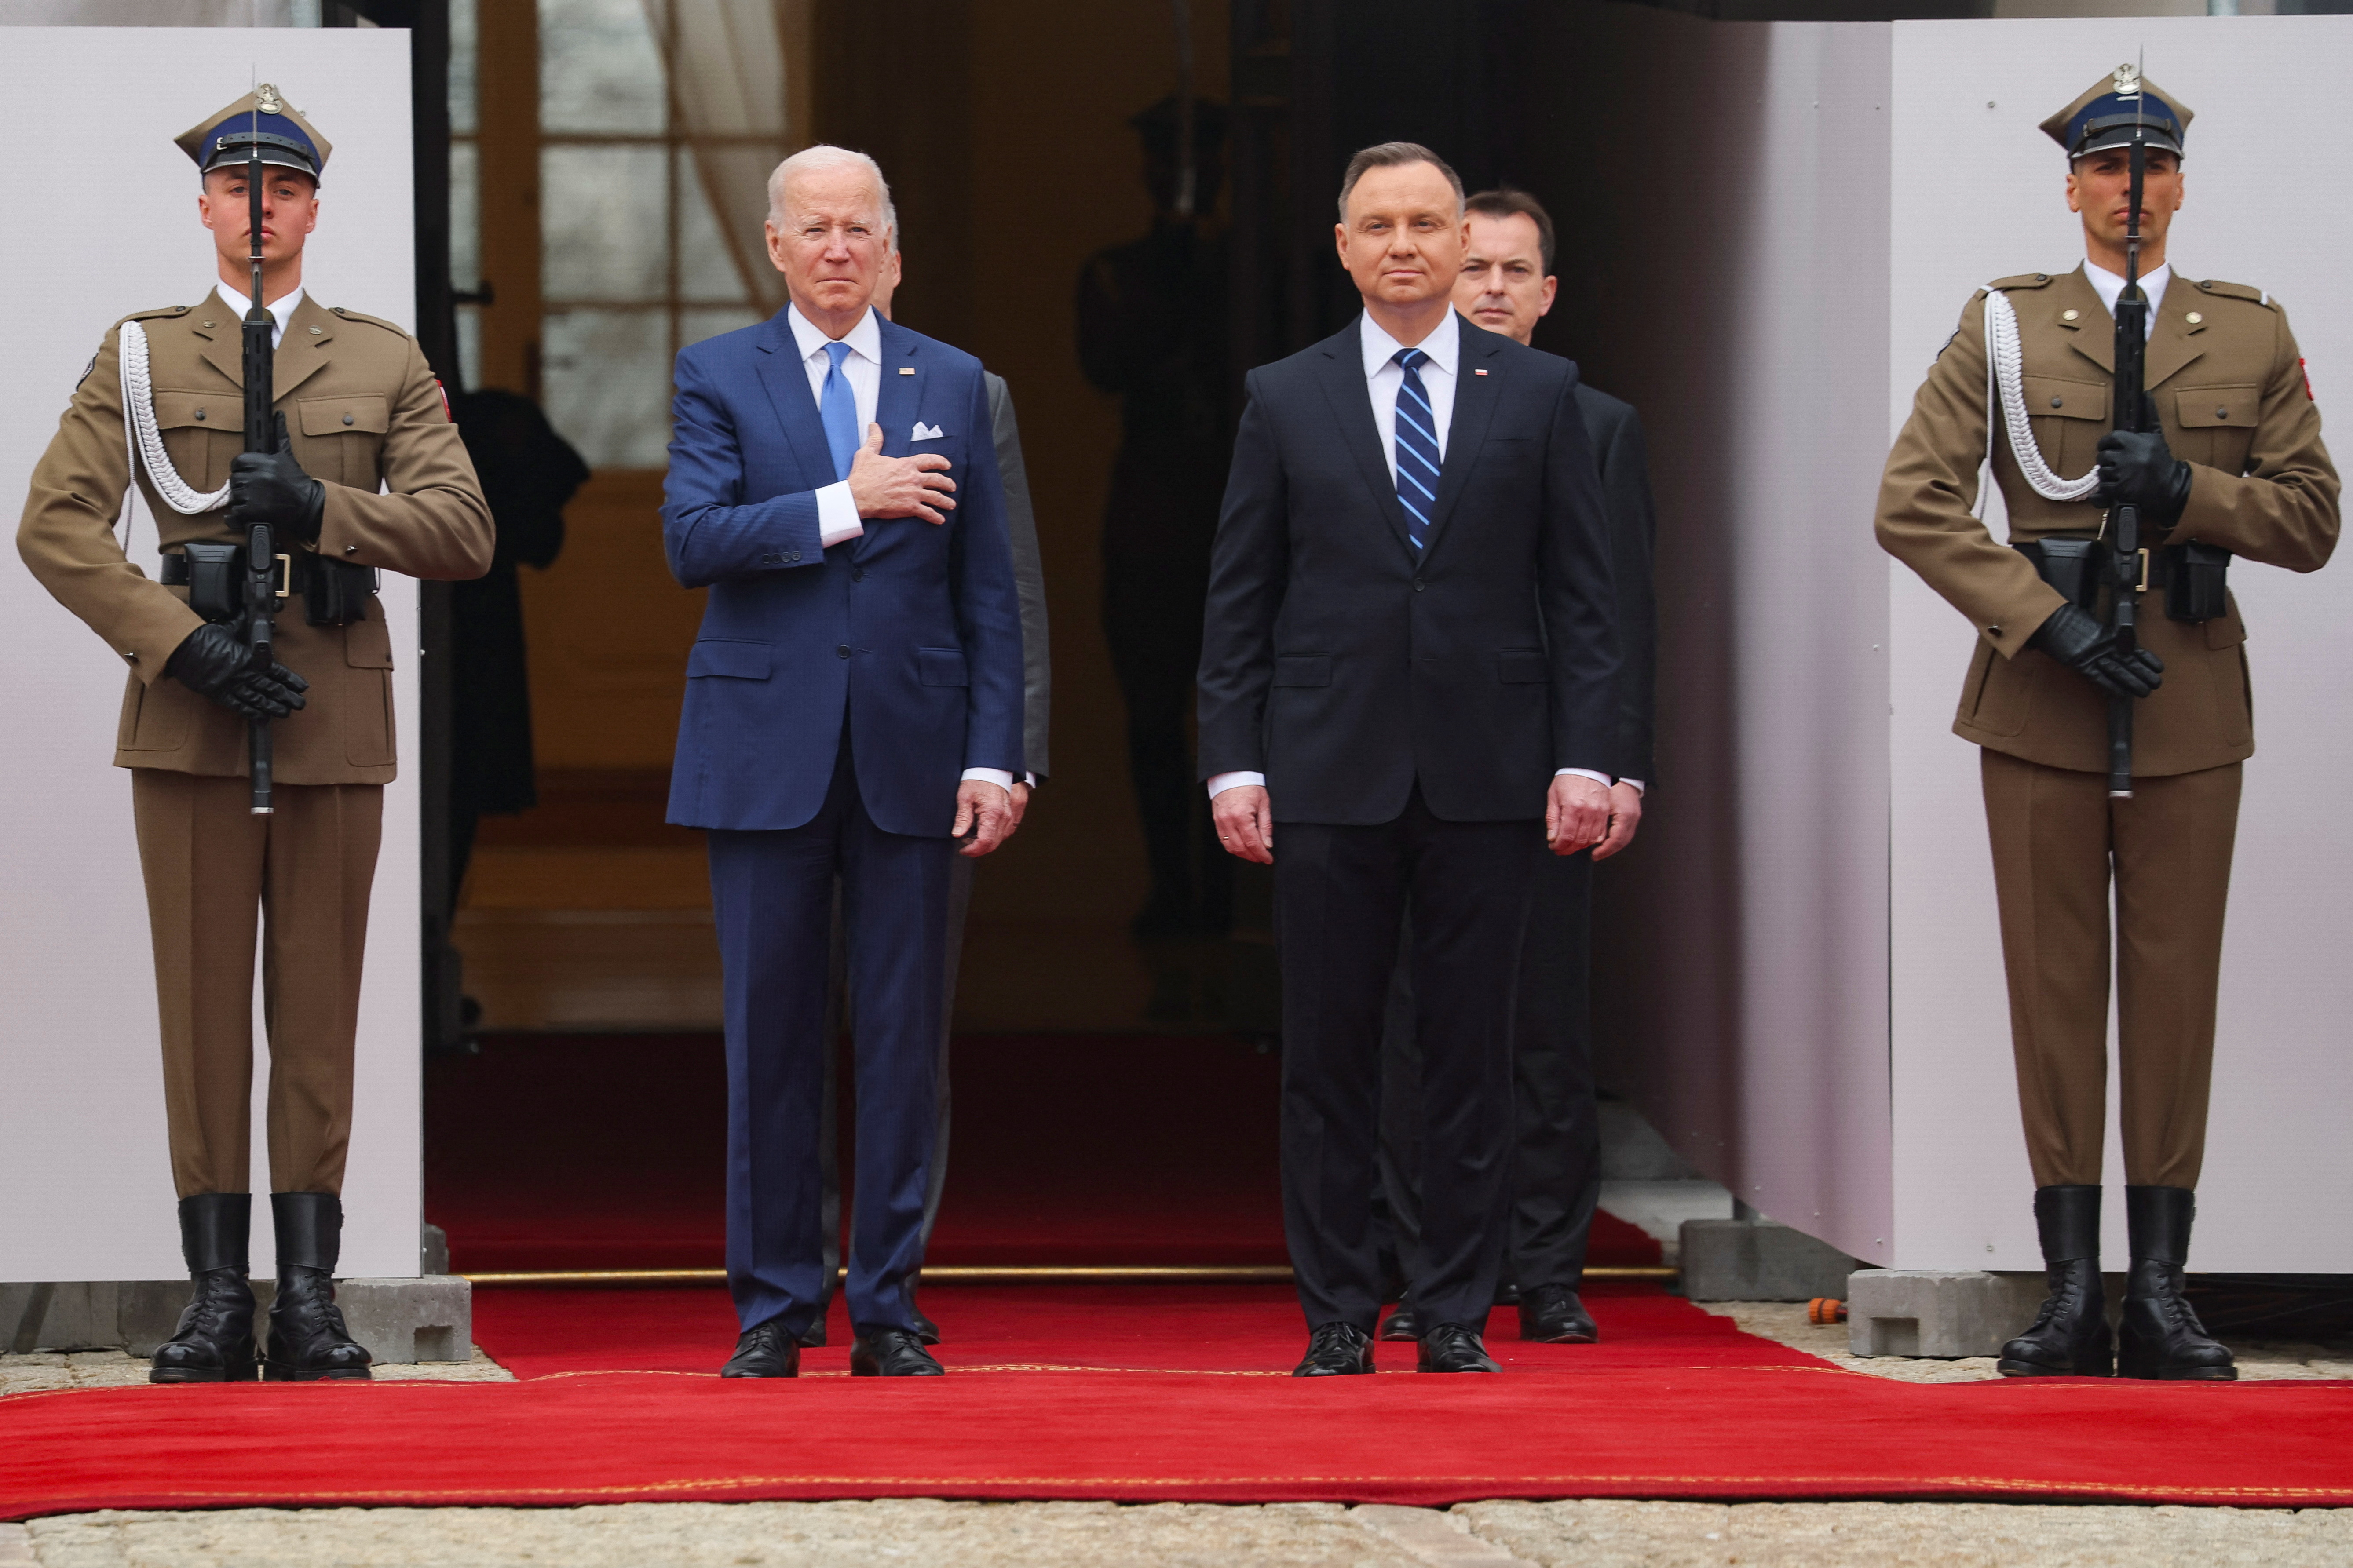 El presidente polaco Andrzej Duda recibe a su par estadounidense, Joe Biden en el Palacio presidencial de Varsovia (REUTERS/Evelyn Hockstein)